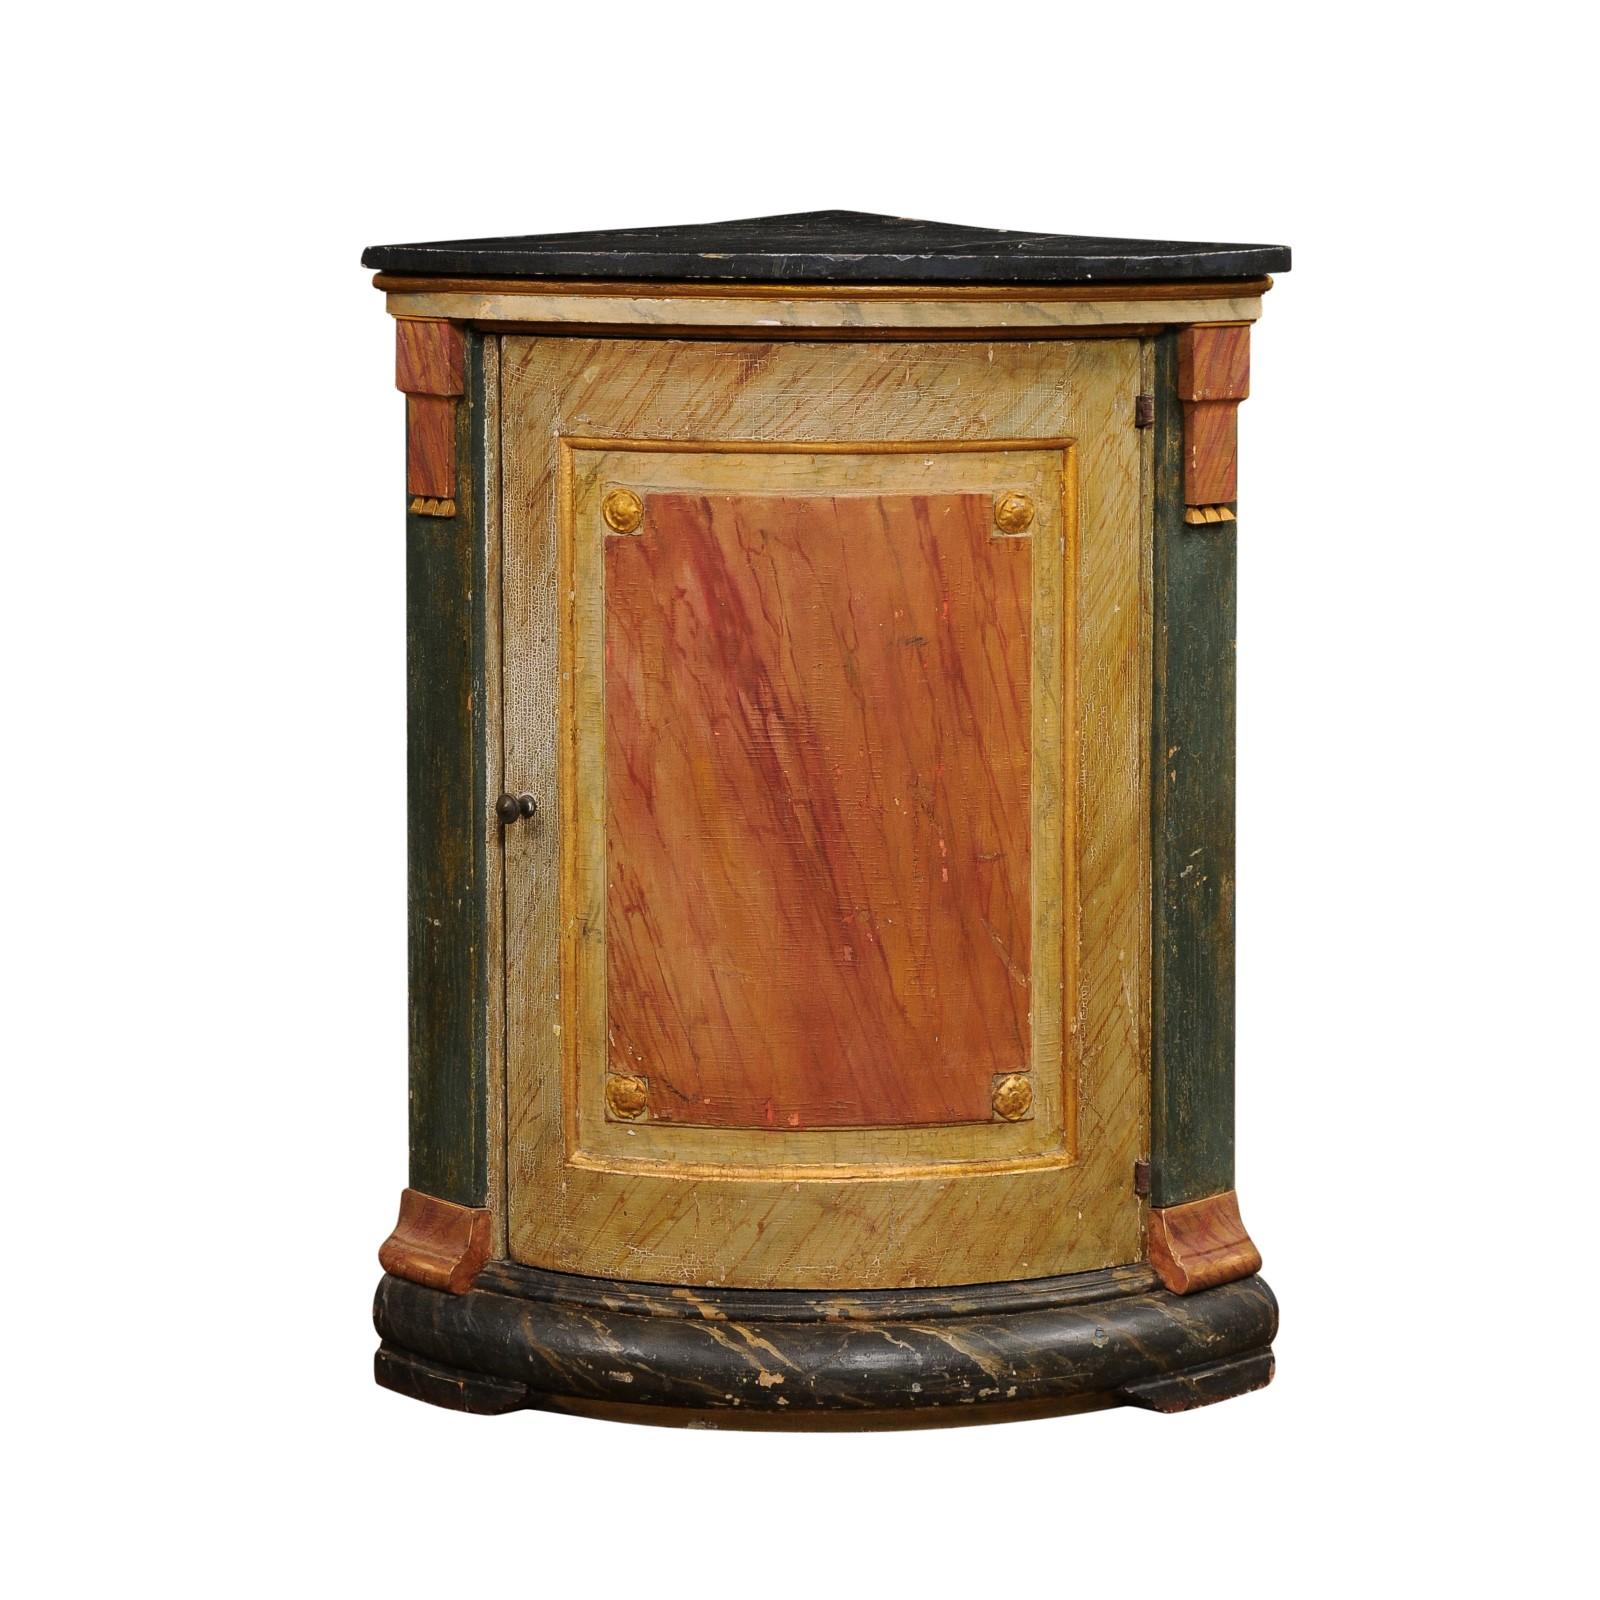 Italienischer Eckschrank im neoklassischen Stil aus bemaltem Holz aus dem 19. Jahrhundert mit marmoriertem, polychromem Dekor, einer Tür, Pilastern, vergoldeten Rosetten und rustikalem Charakter. Dieser im 19. Jahrhundert in Italien hergestellte